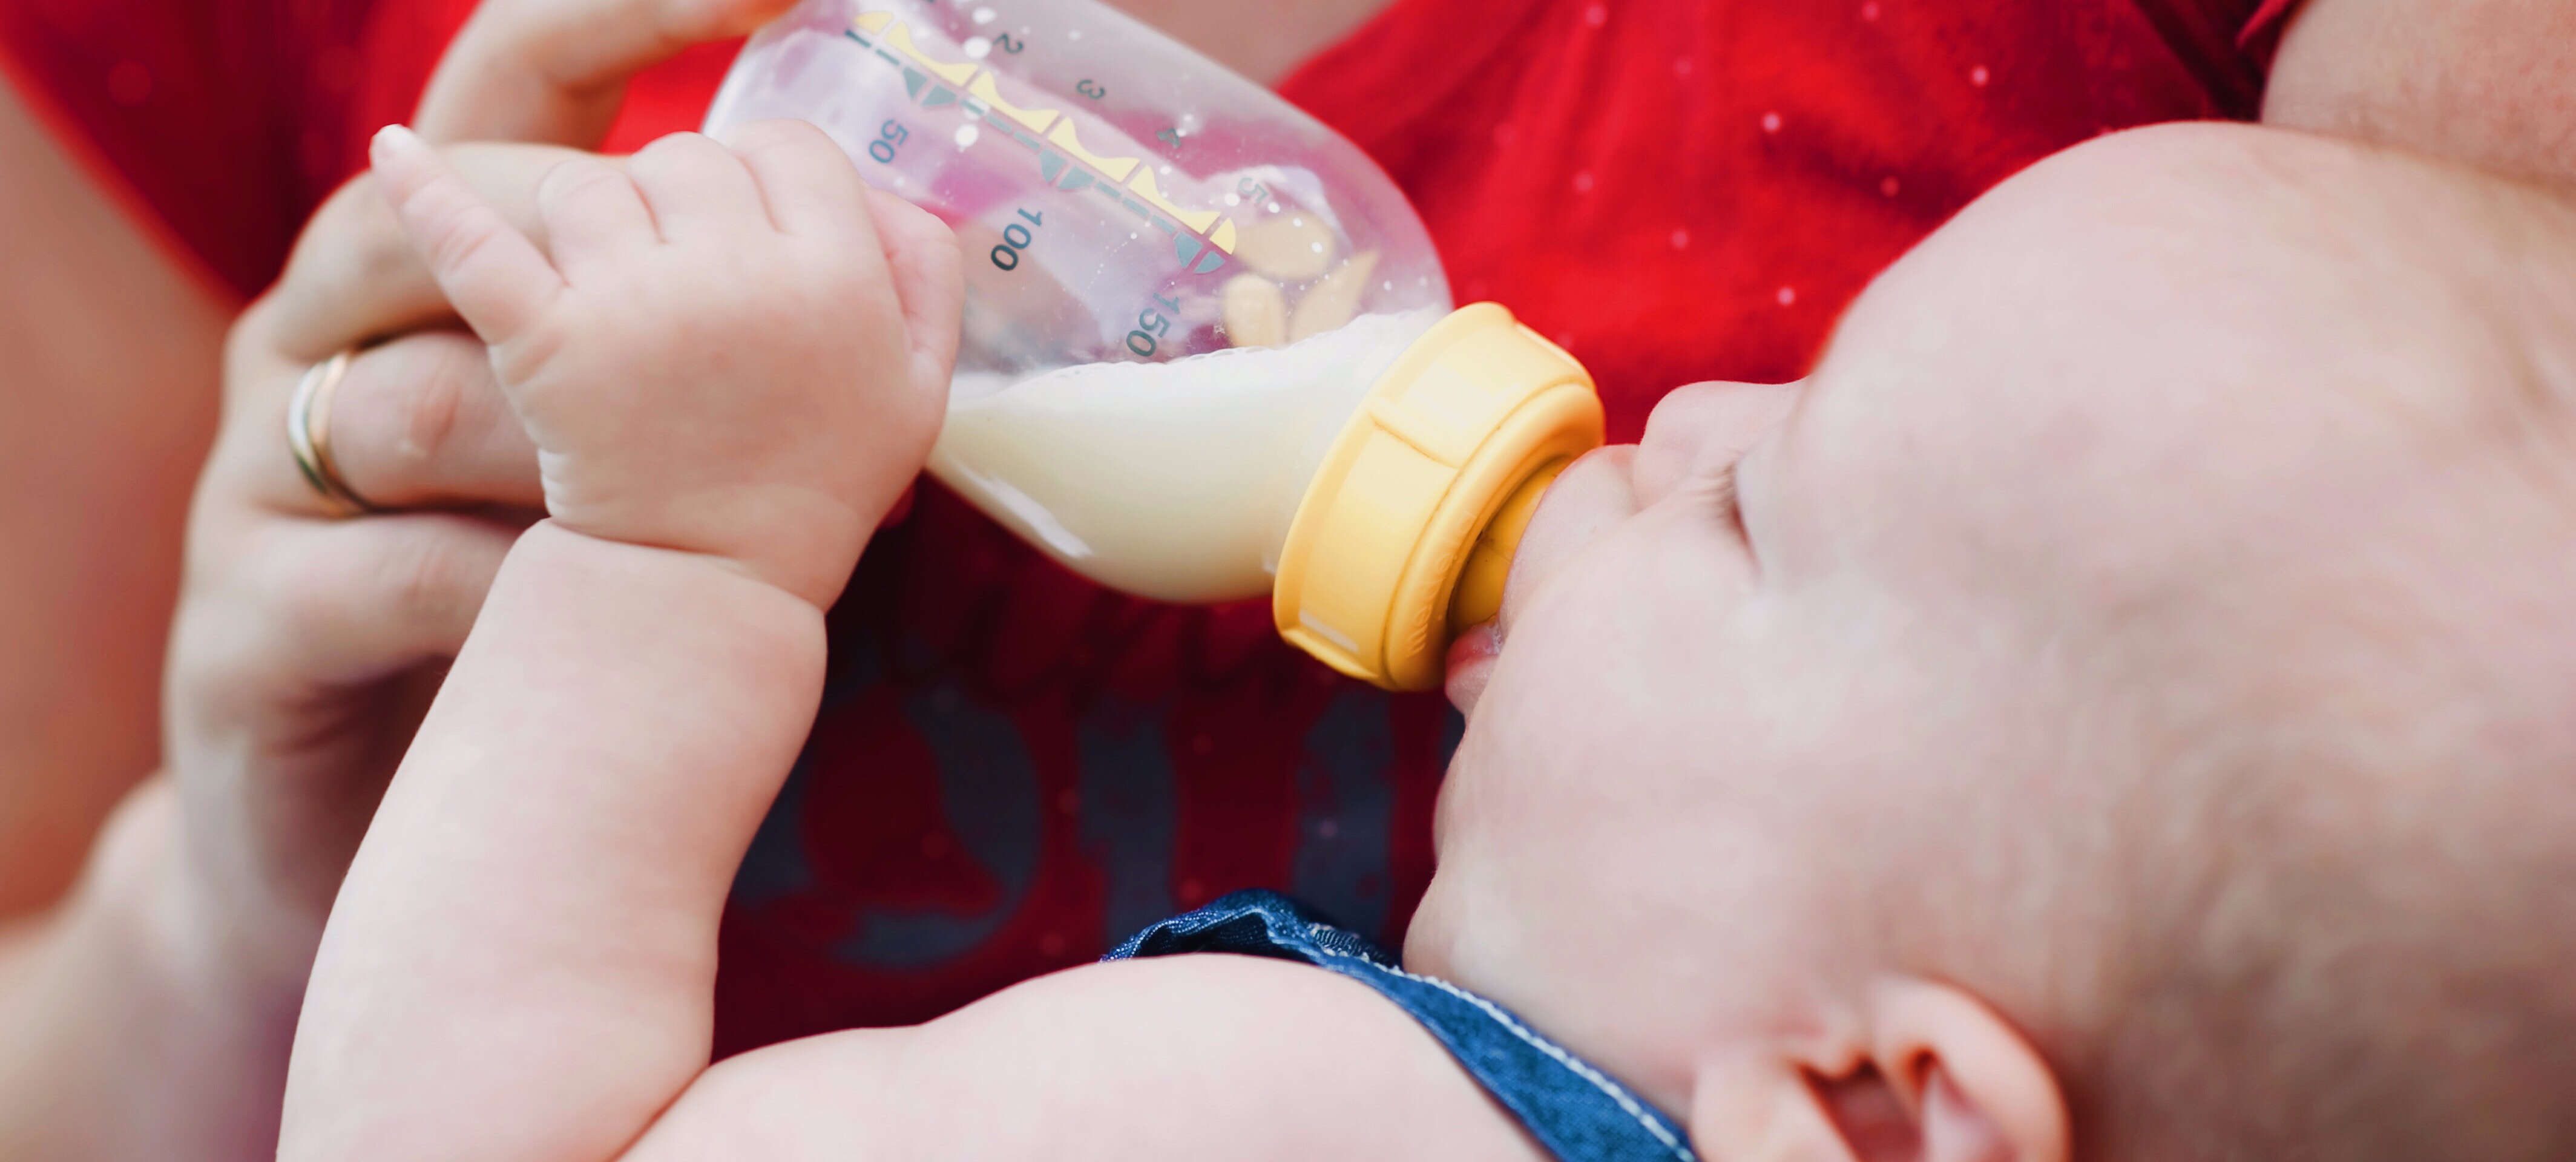 Baby fidgeting while bottle feeding